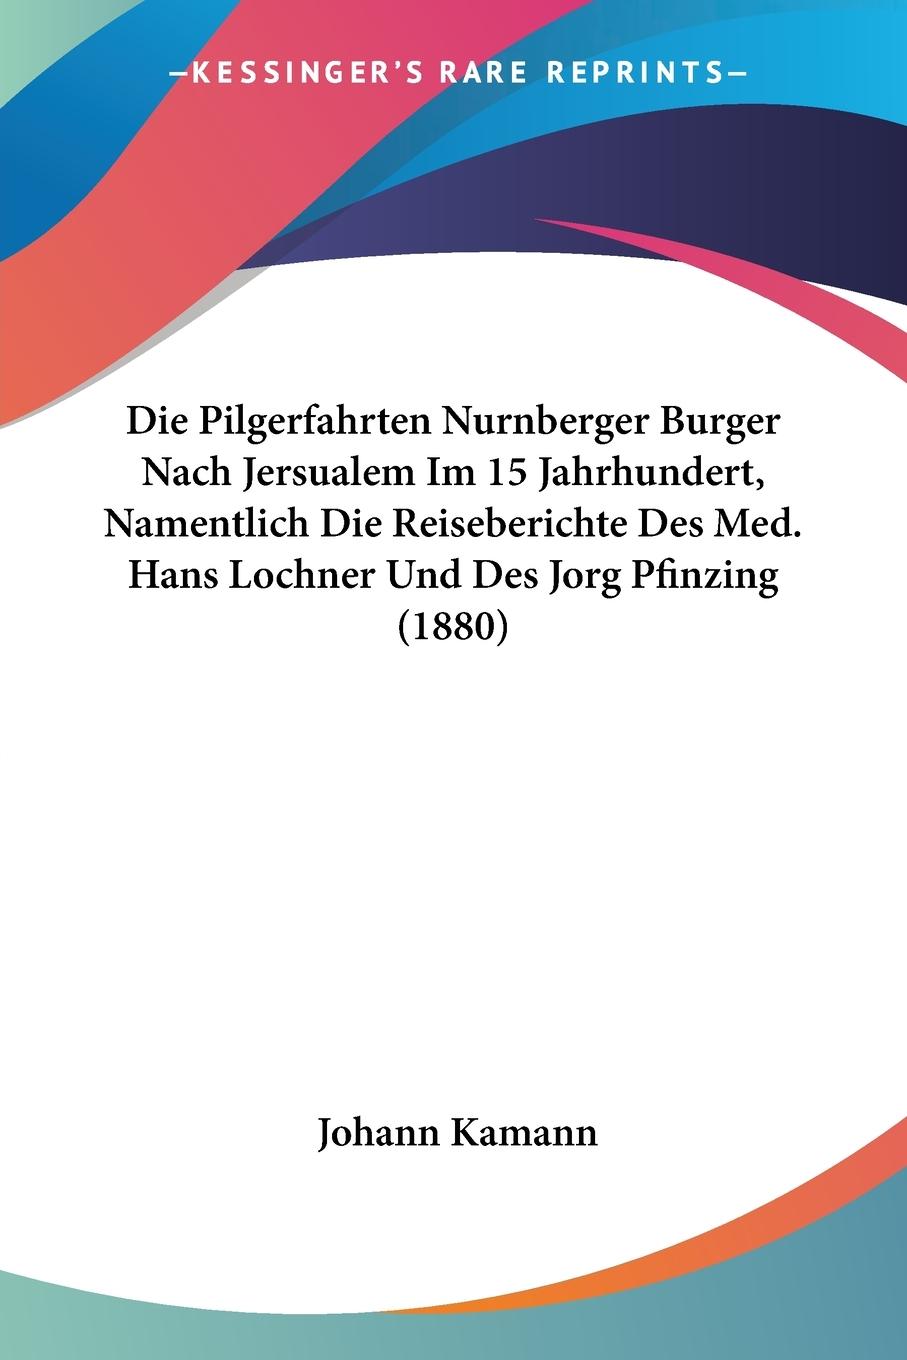 Die Pilgerfahrten Nurnberger Burger Nach Jersualem Im 15 Jahrhundert, Namentlich Die Reiseberichte Des Med. Hans Lochner Und Des Jorg Pfinzing (1880)